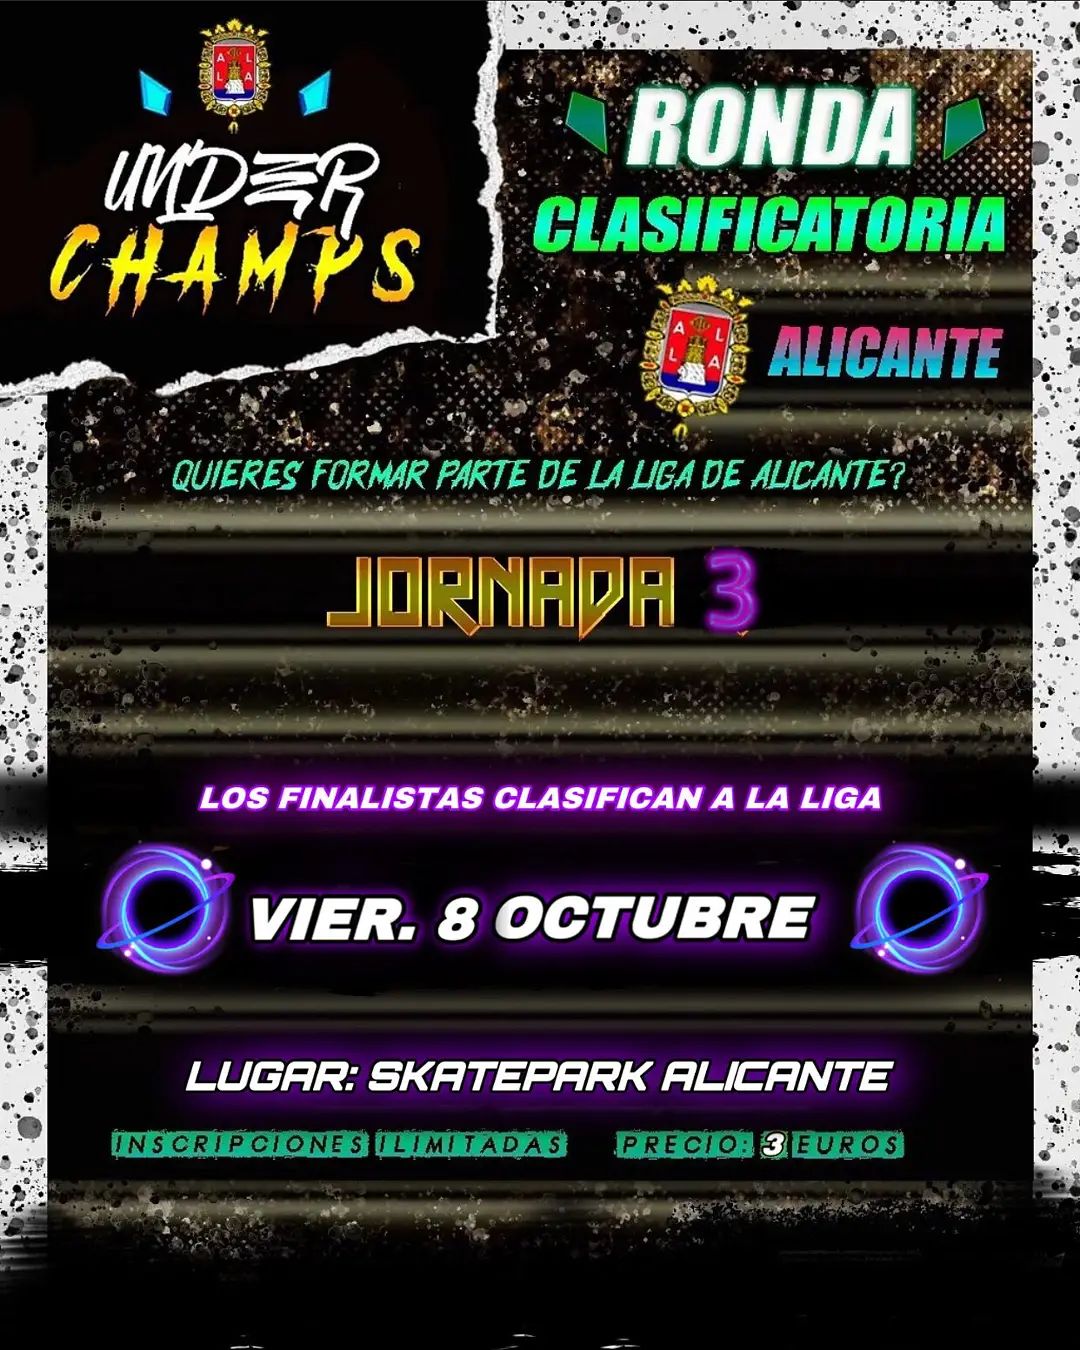 cartel Ronda Clasificatoria Jornada 3 Alicante underchamps